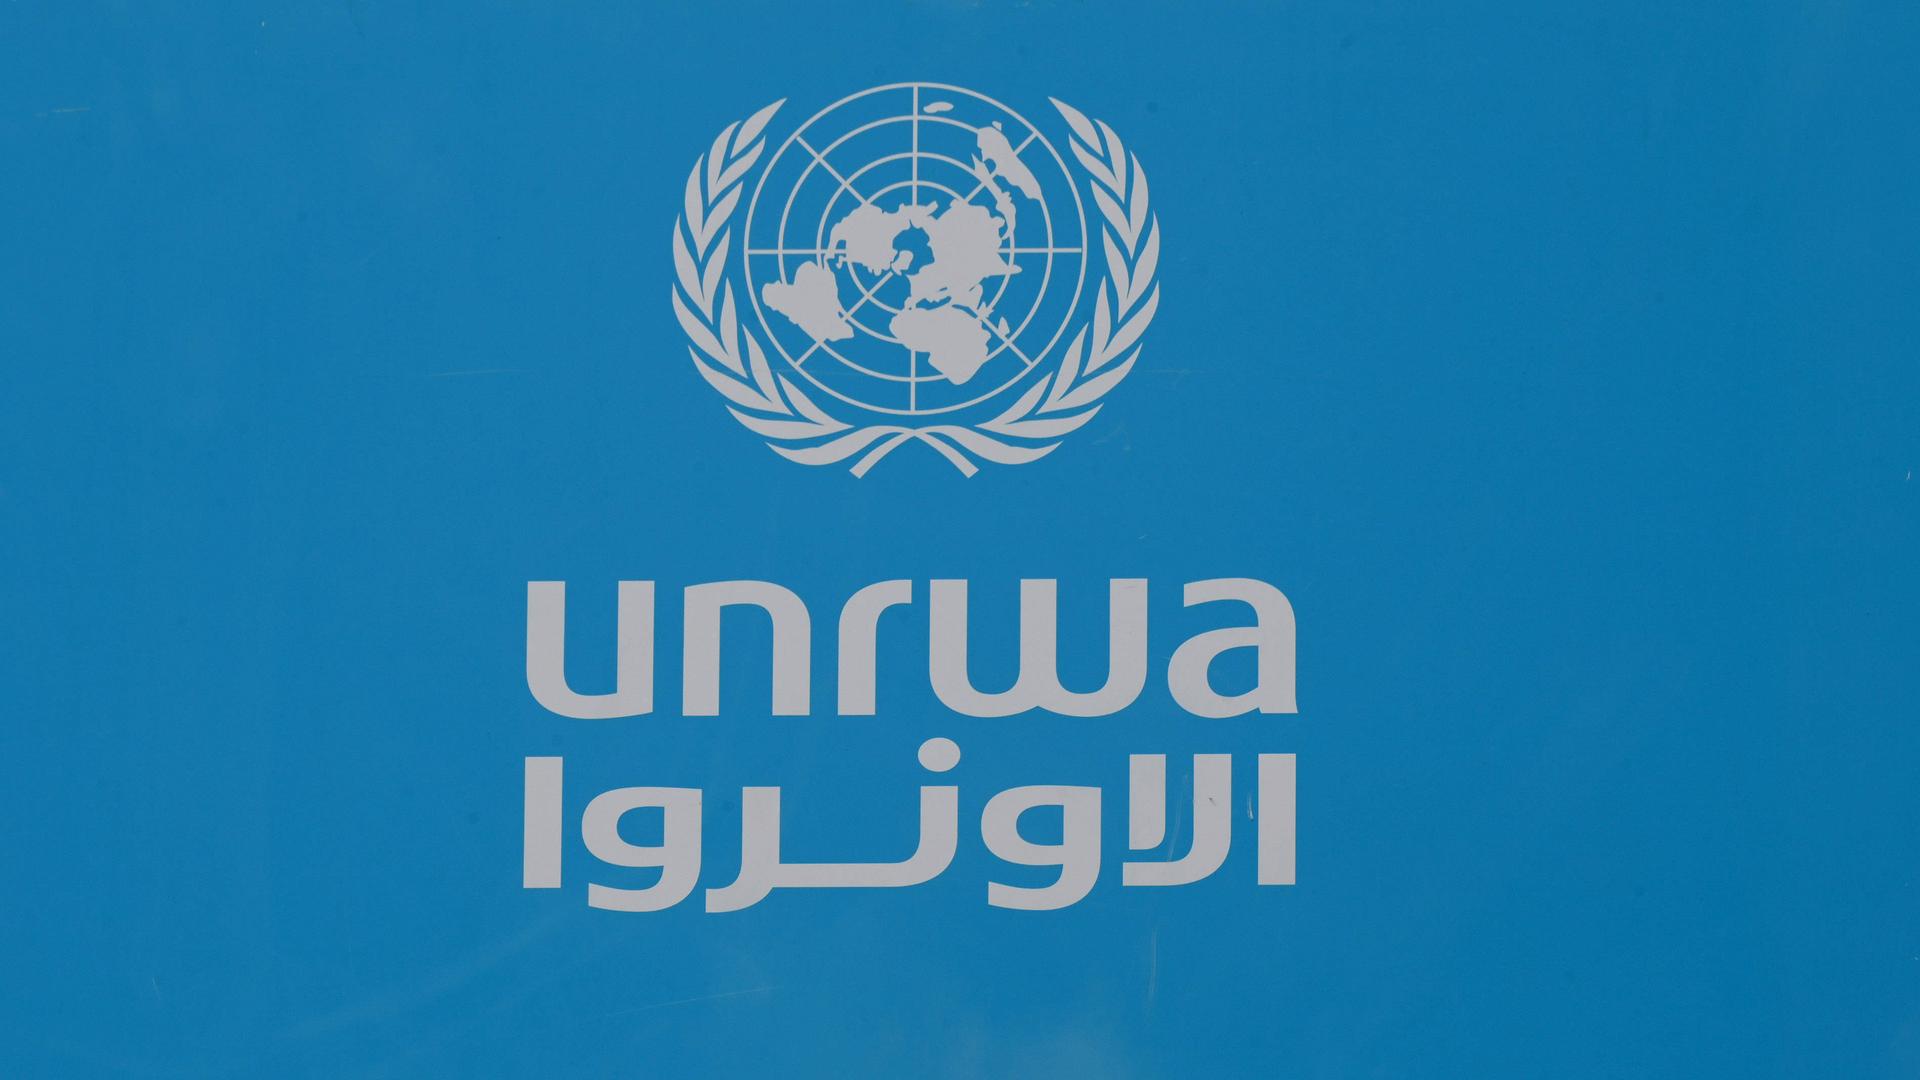 Das Logo des Palästinenserhilfswerks der UNO, UNRWA